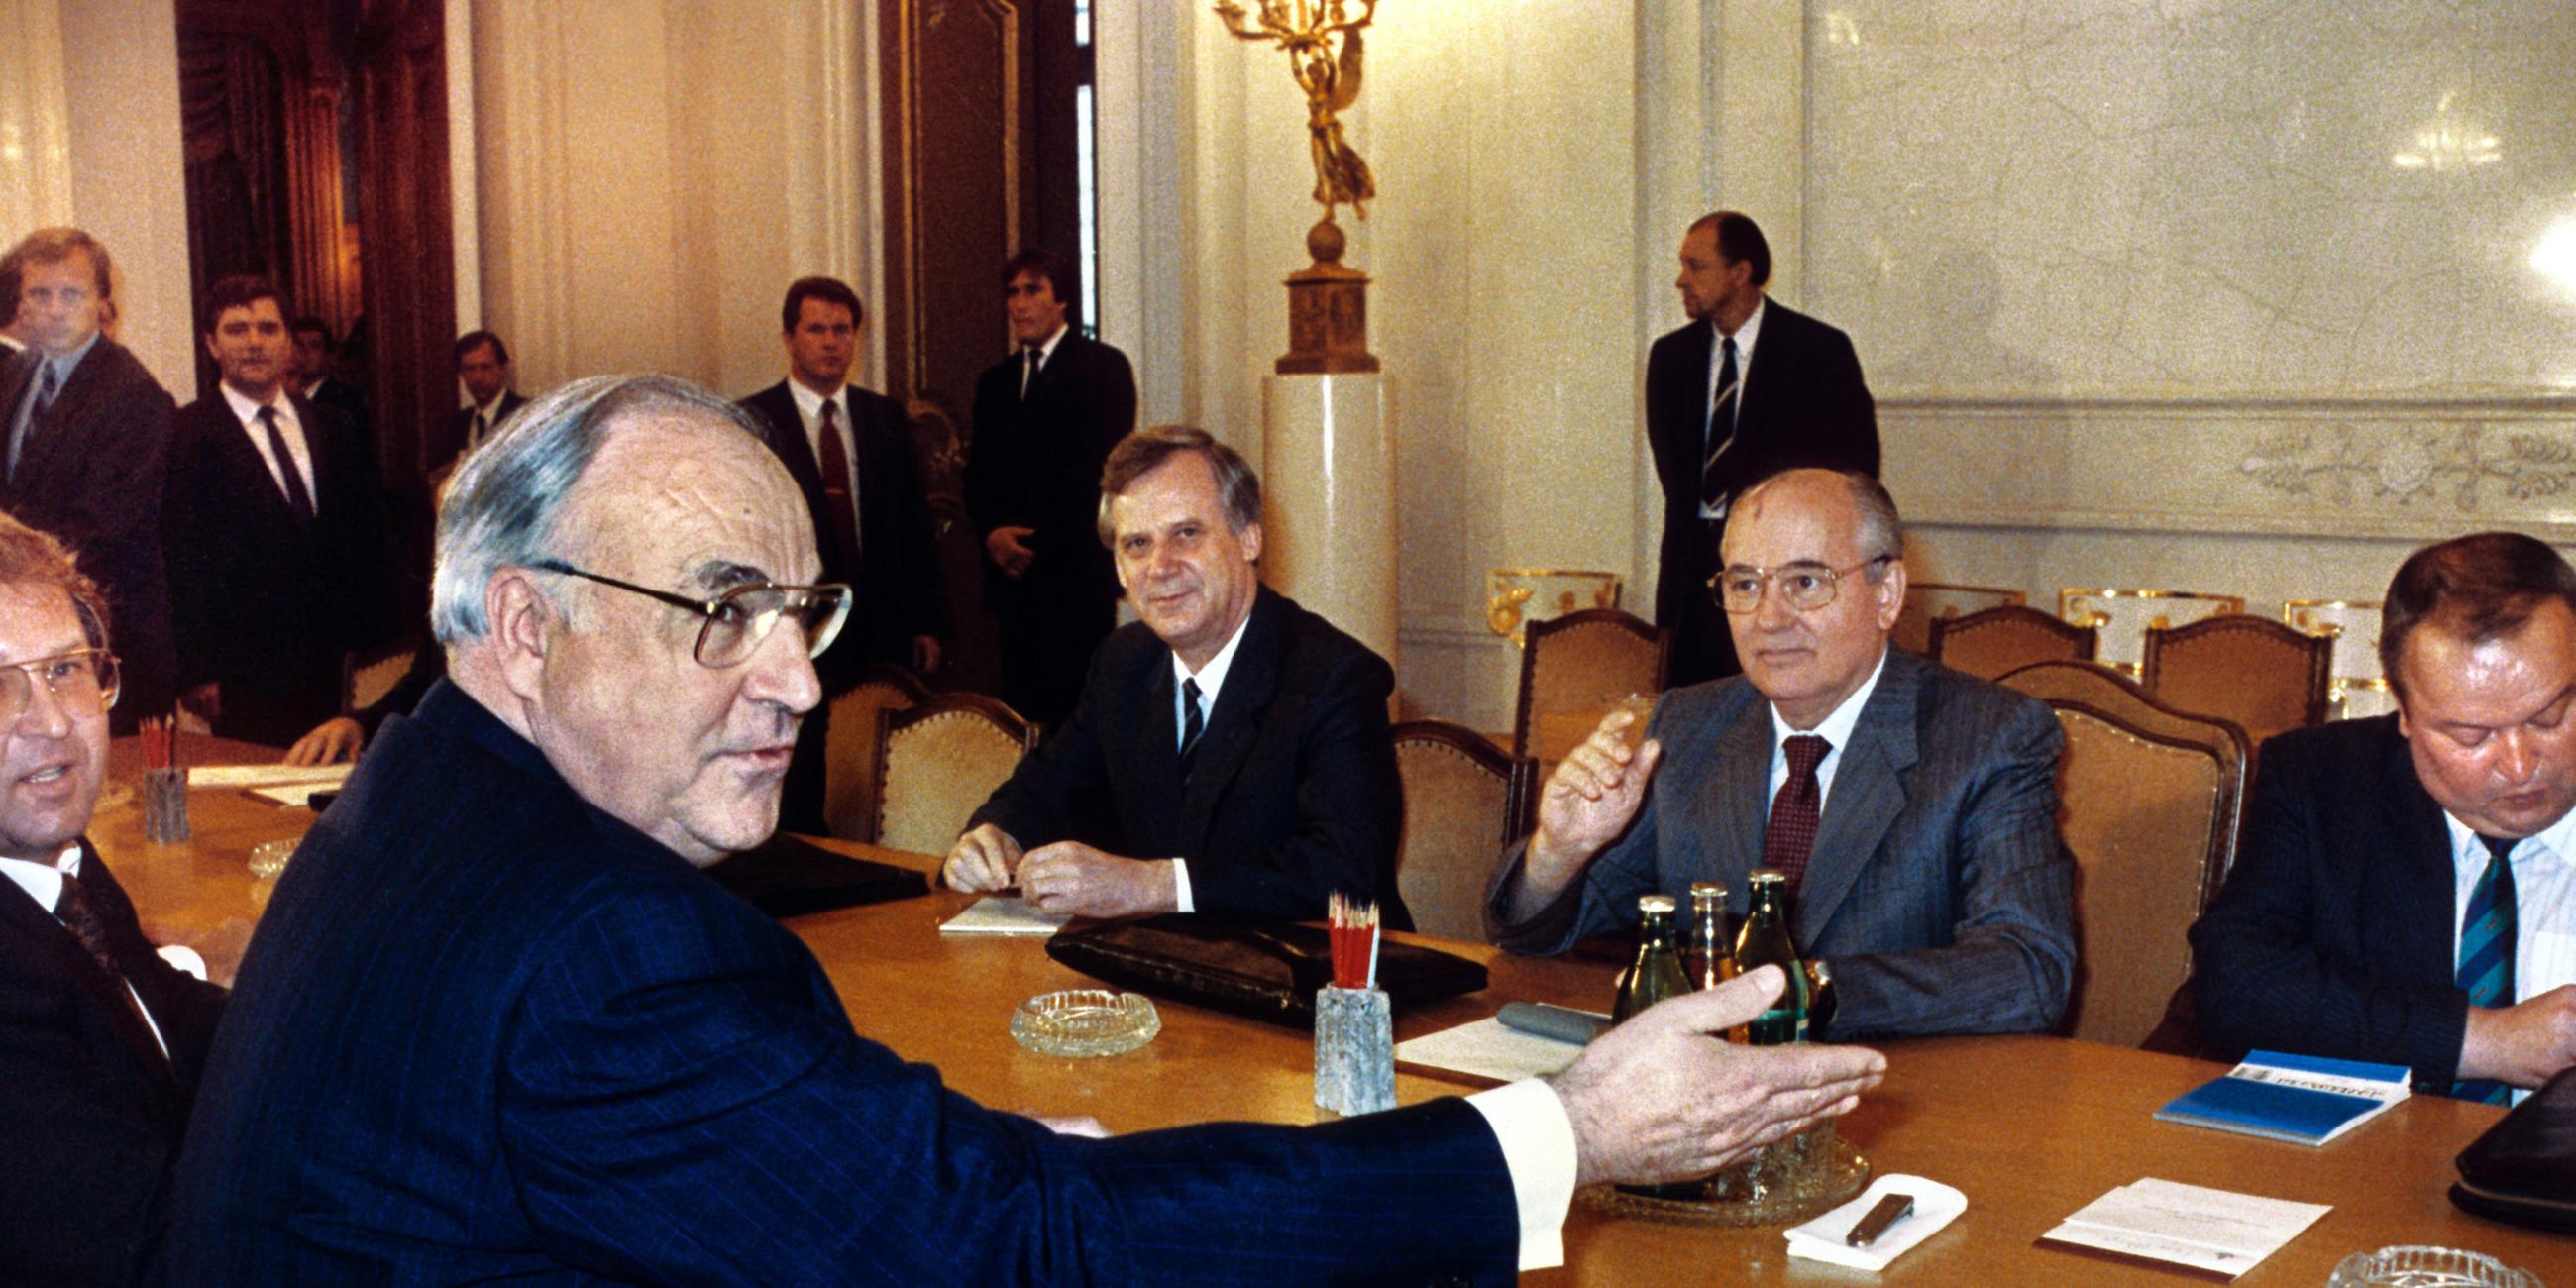 Helmut Kohl mit Michail Gorbatschow in Moskau am Konferenztisch